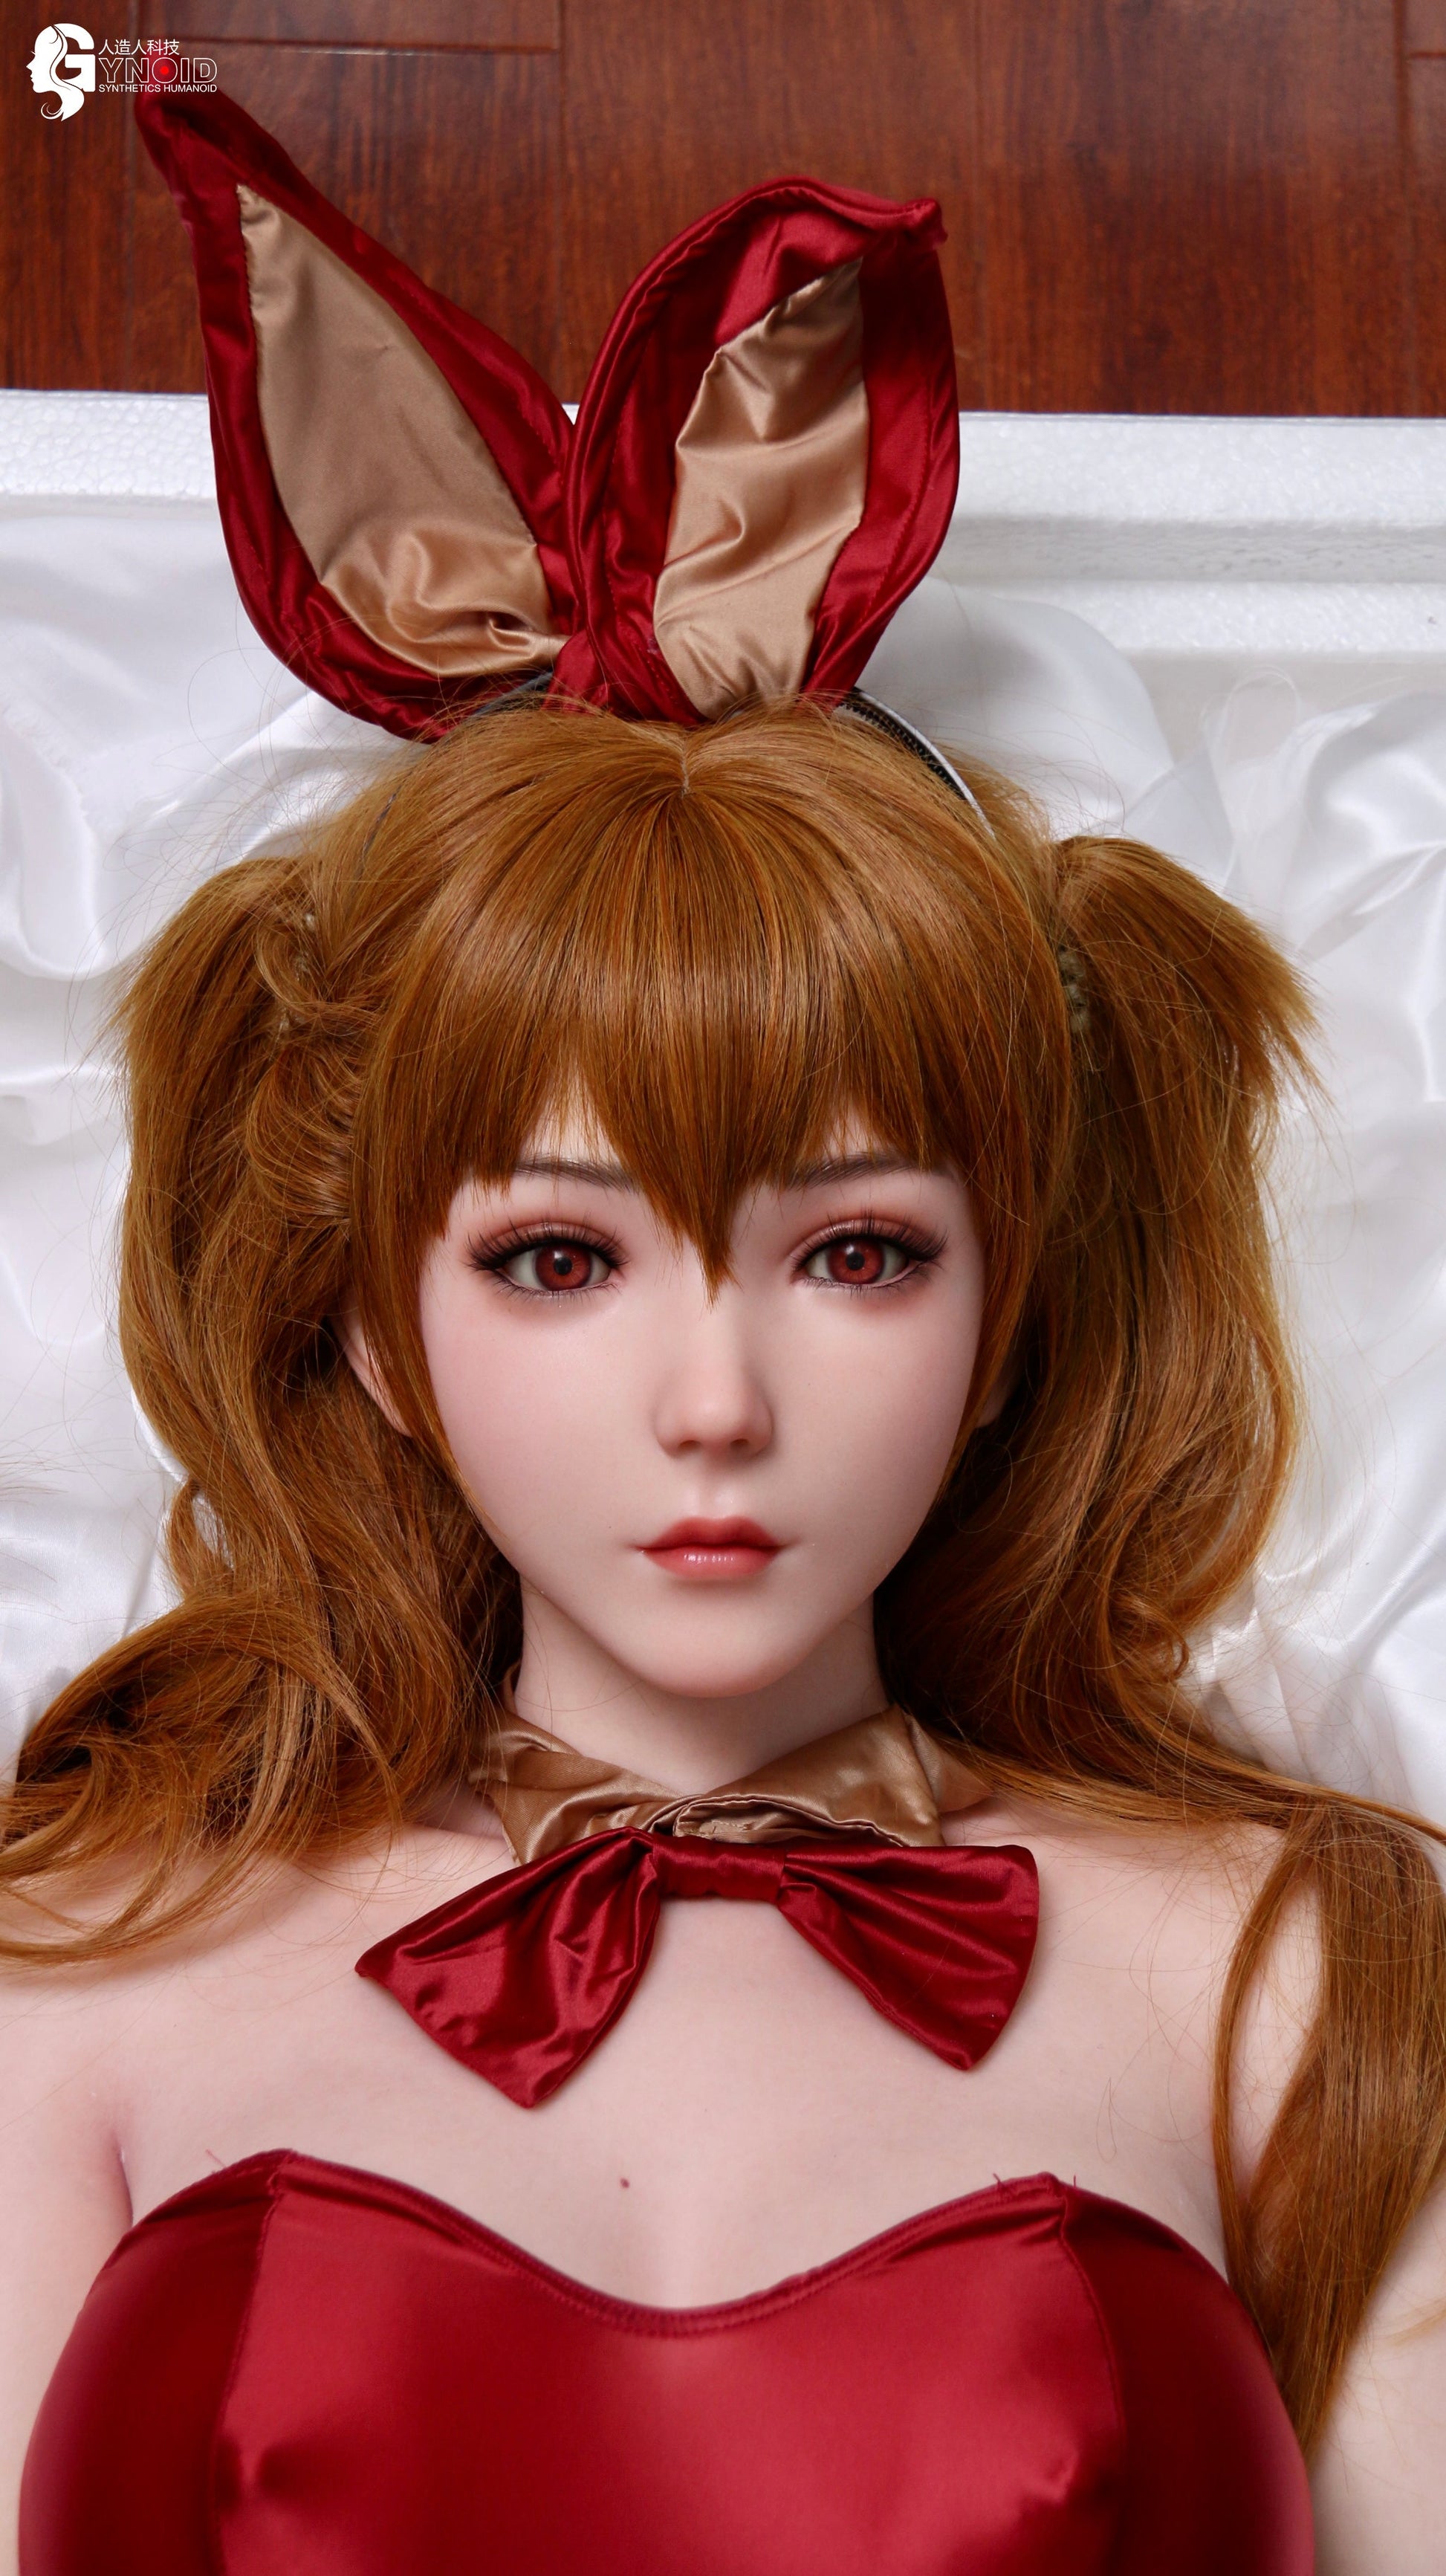 Gynoid Model 14 - Ada - Love Dolls 4U